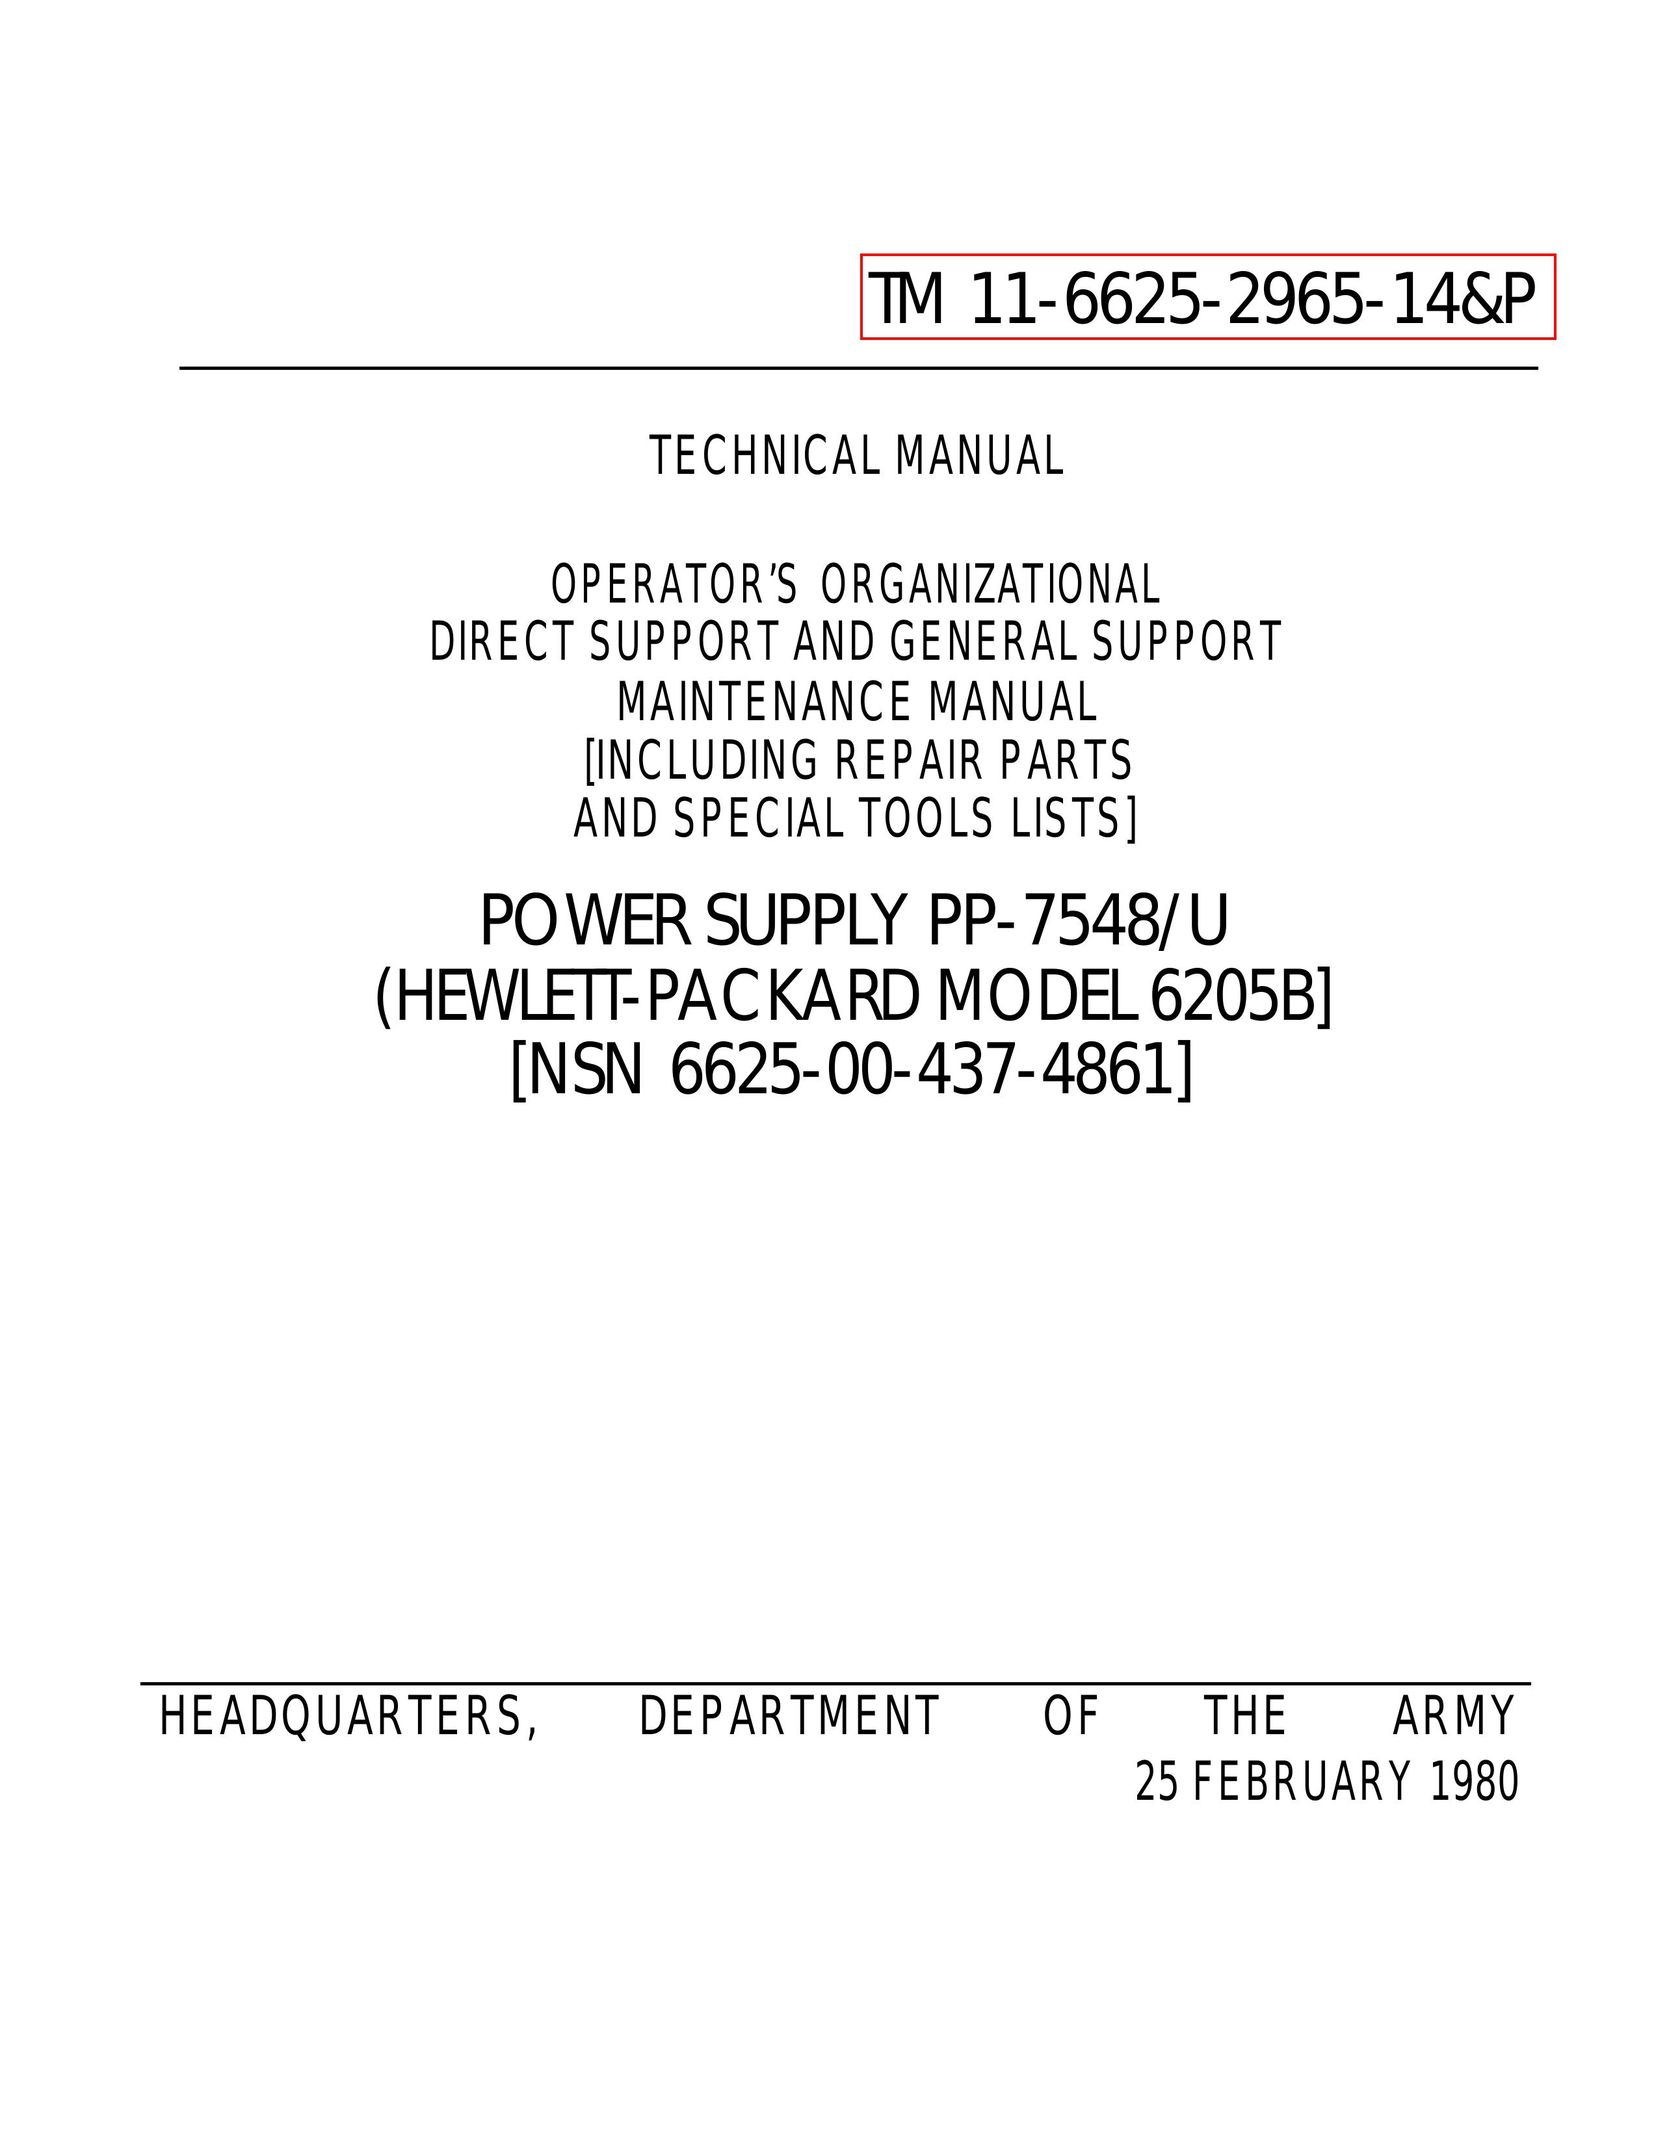 HP (Hewlett-Packard) 6205B Power Supply User Manual